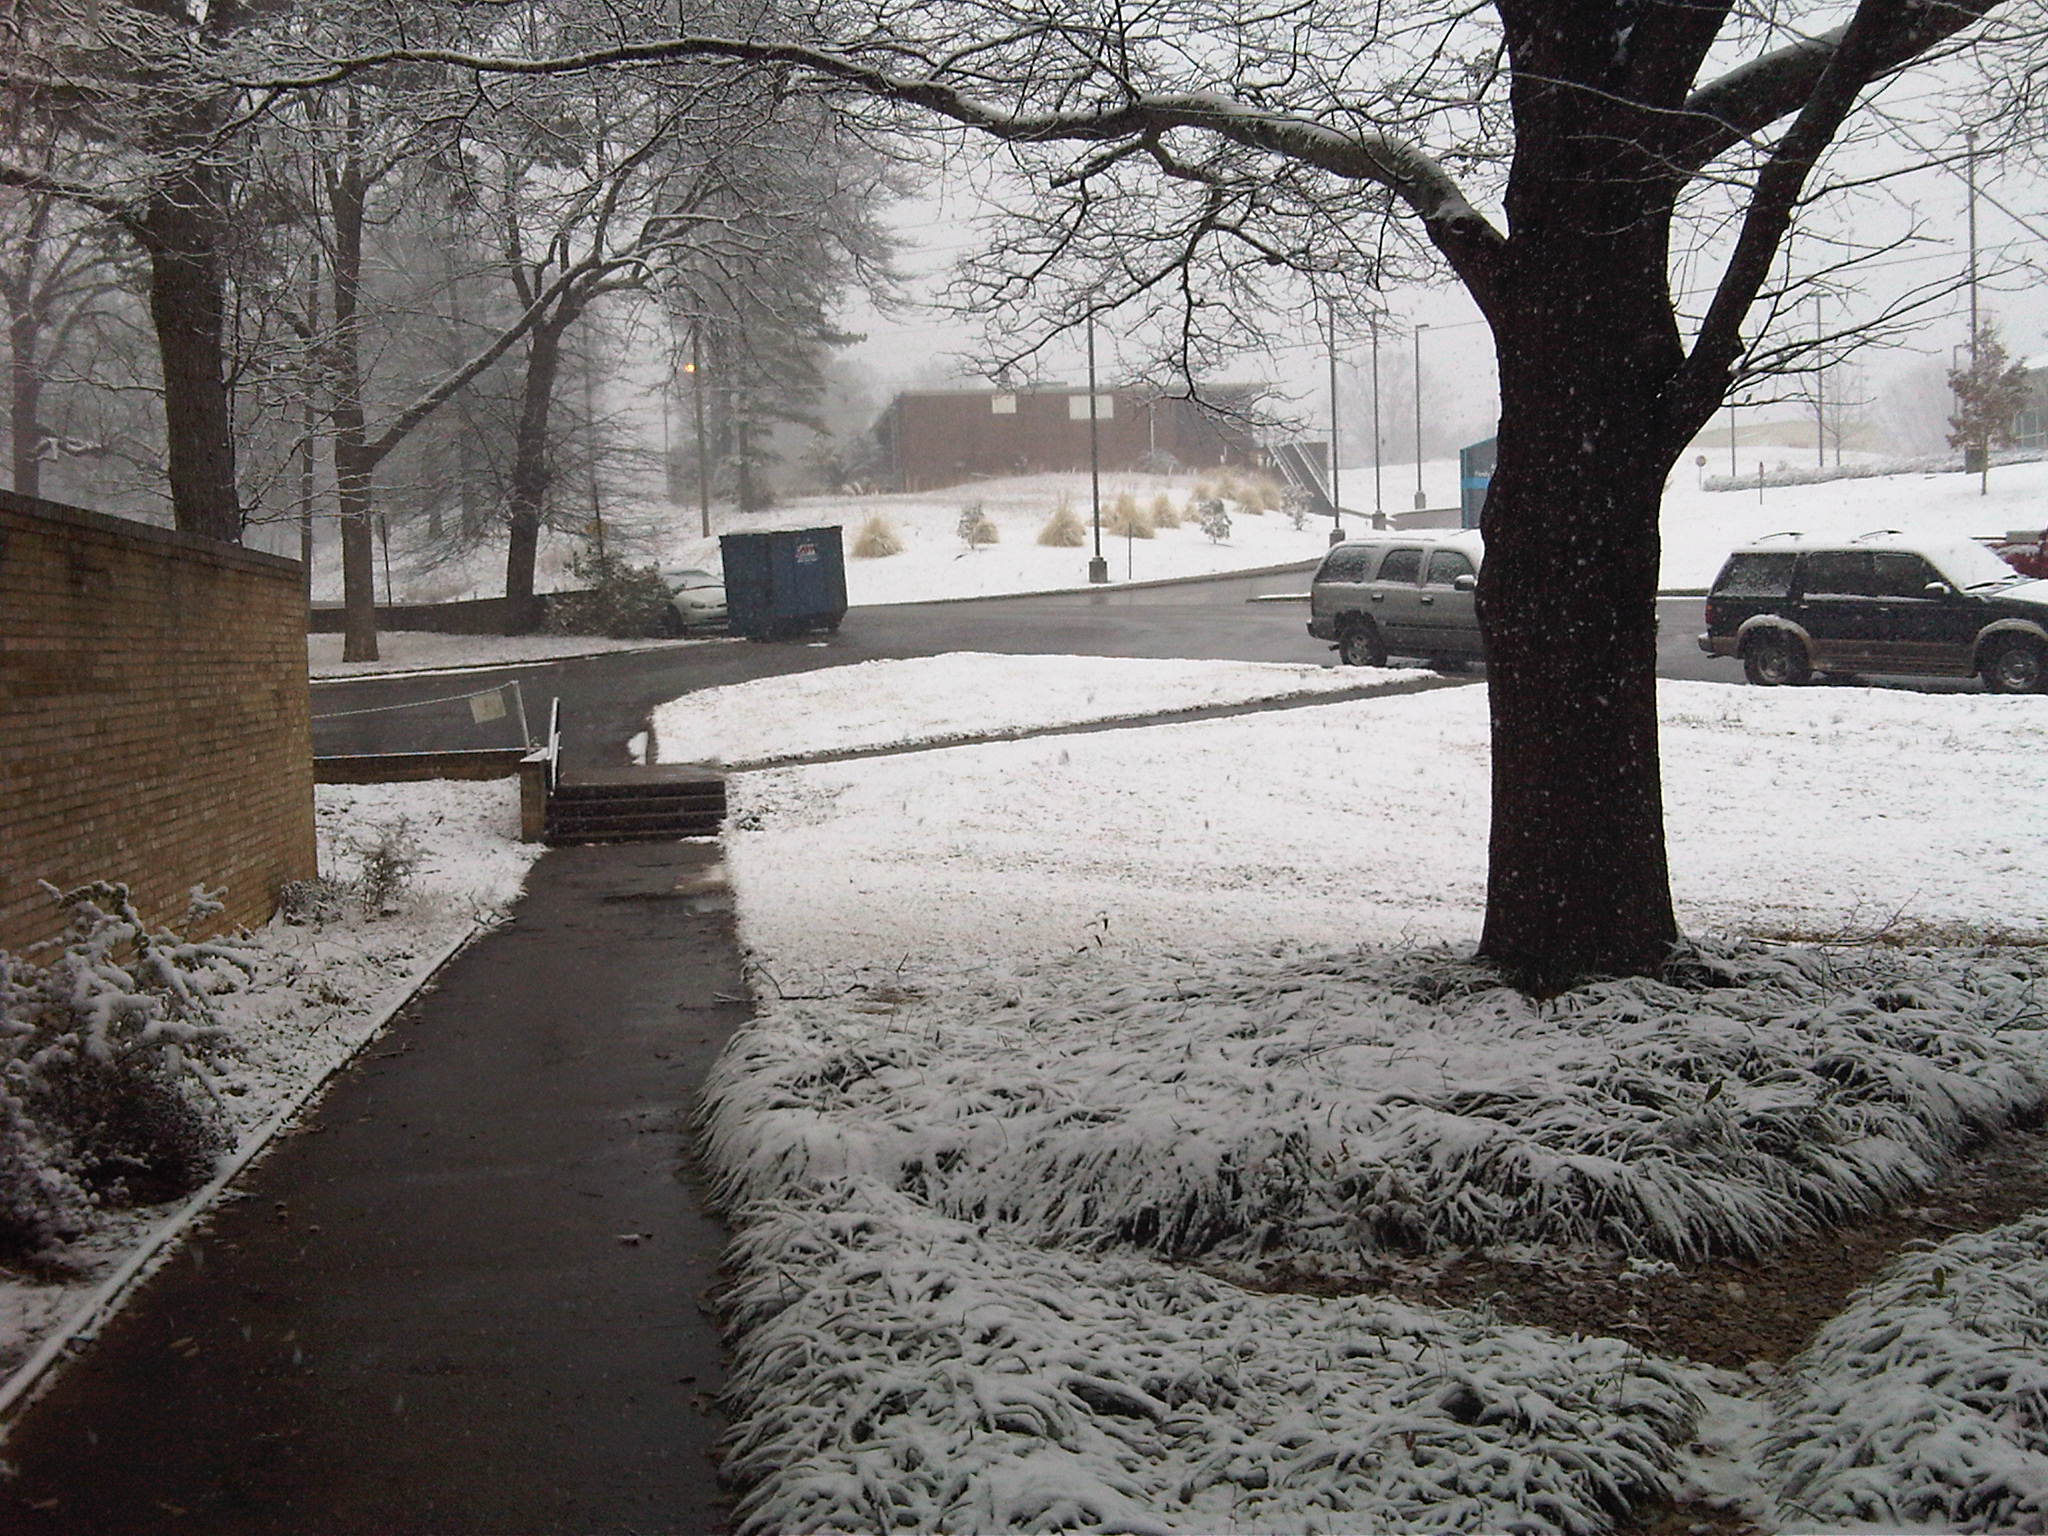 Snow in Anniston, AL on Feb. 12 2010